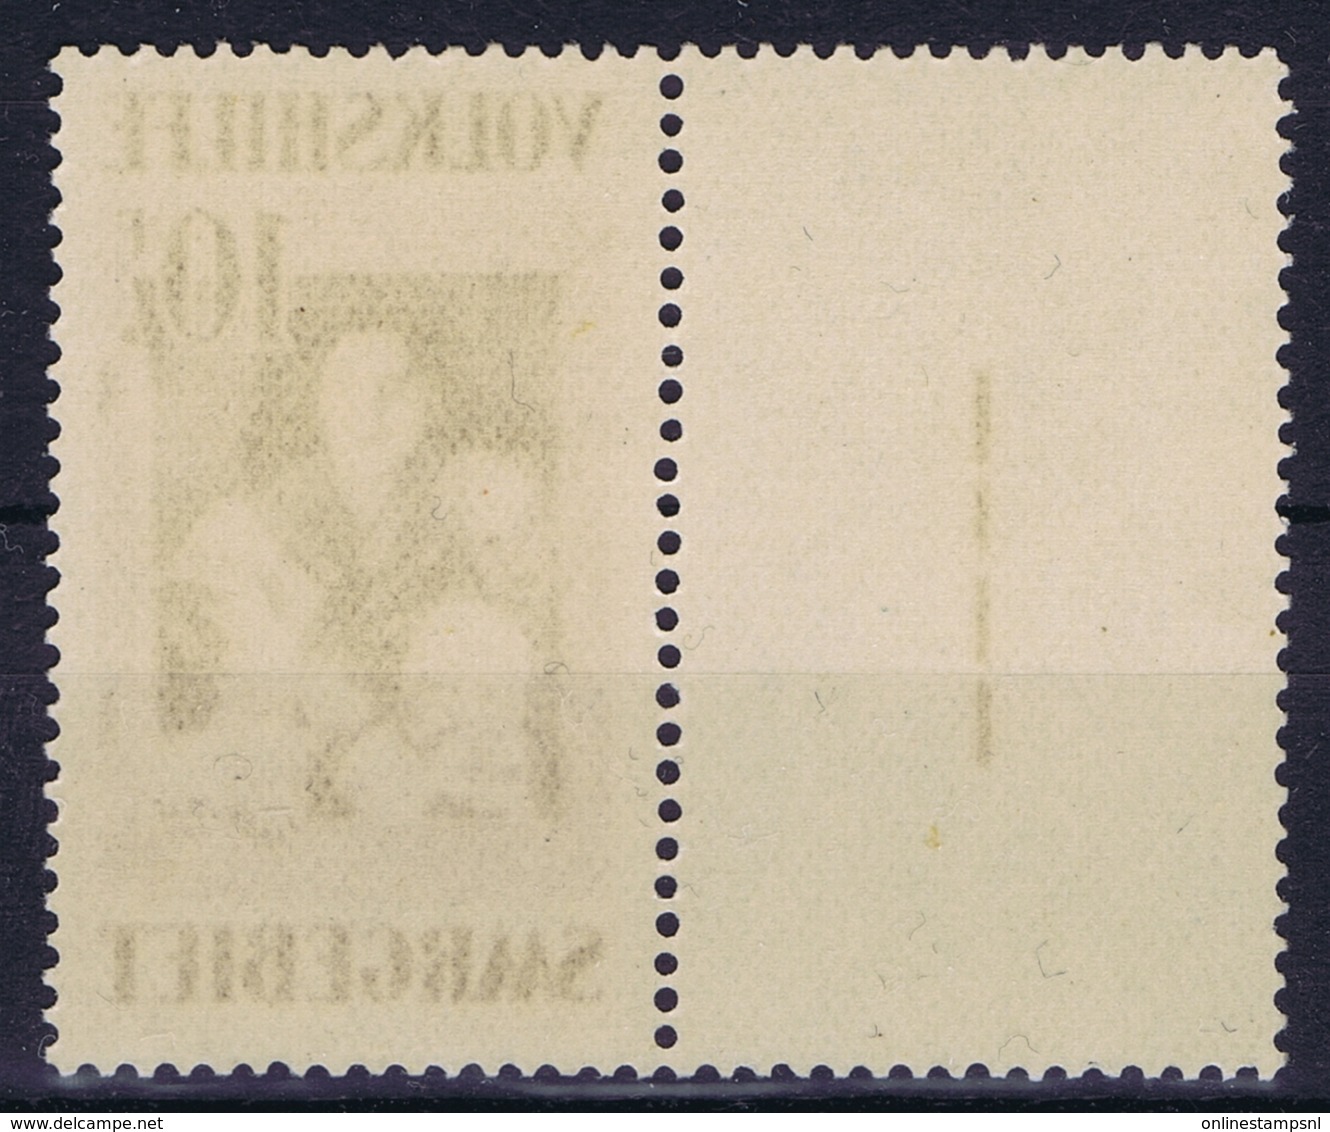 Deutsches Reich:  Saargebiet  M 150 Postfrisch/neuf Sans Charniere /MNH/** - Unused Stamps